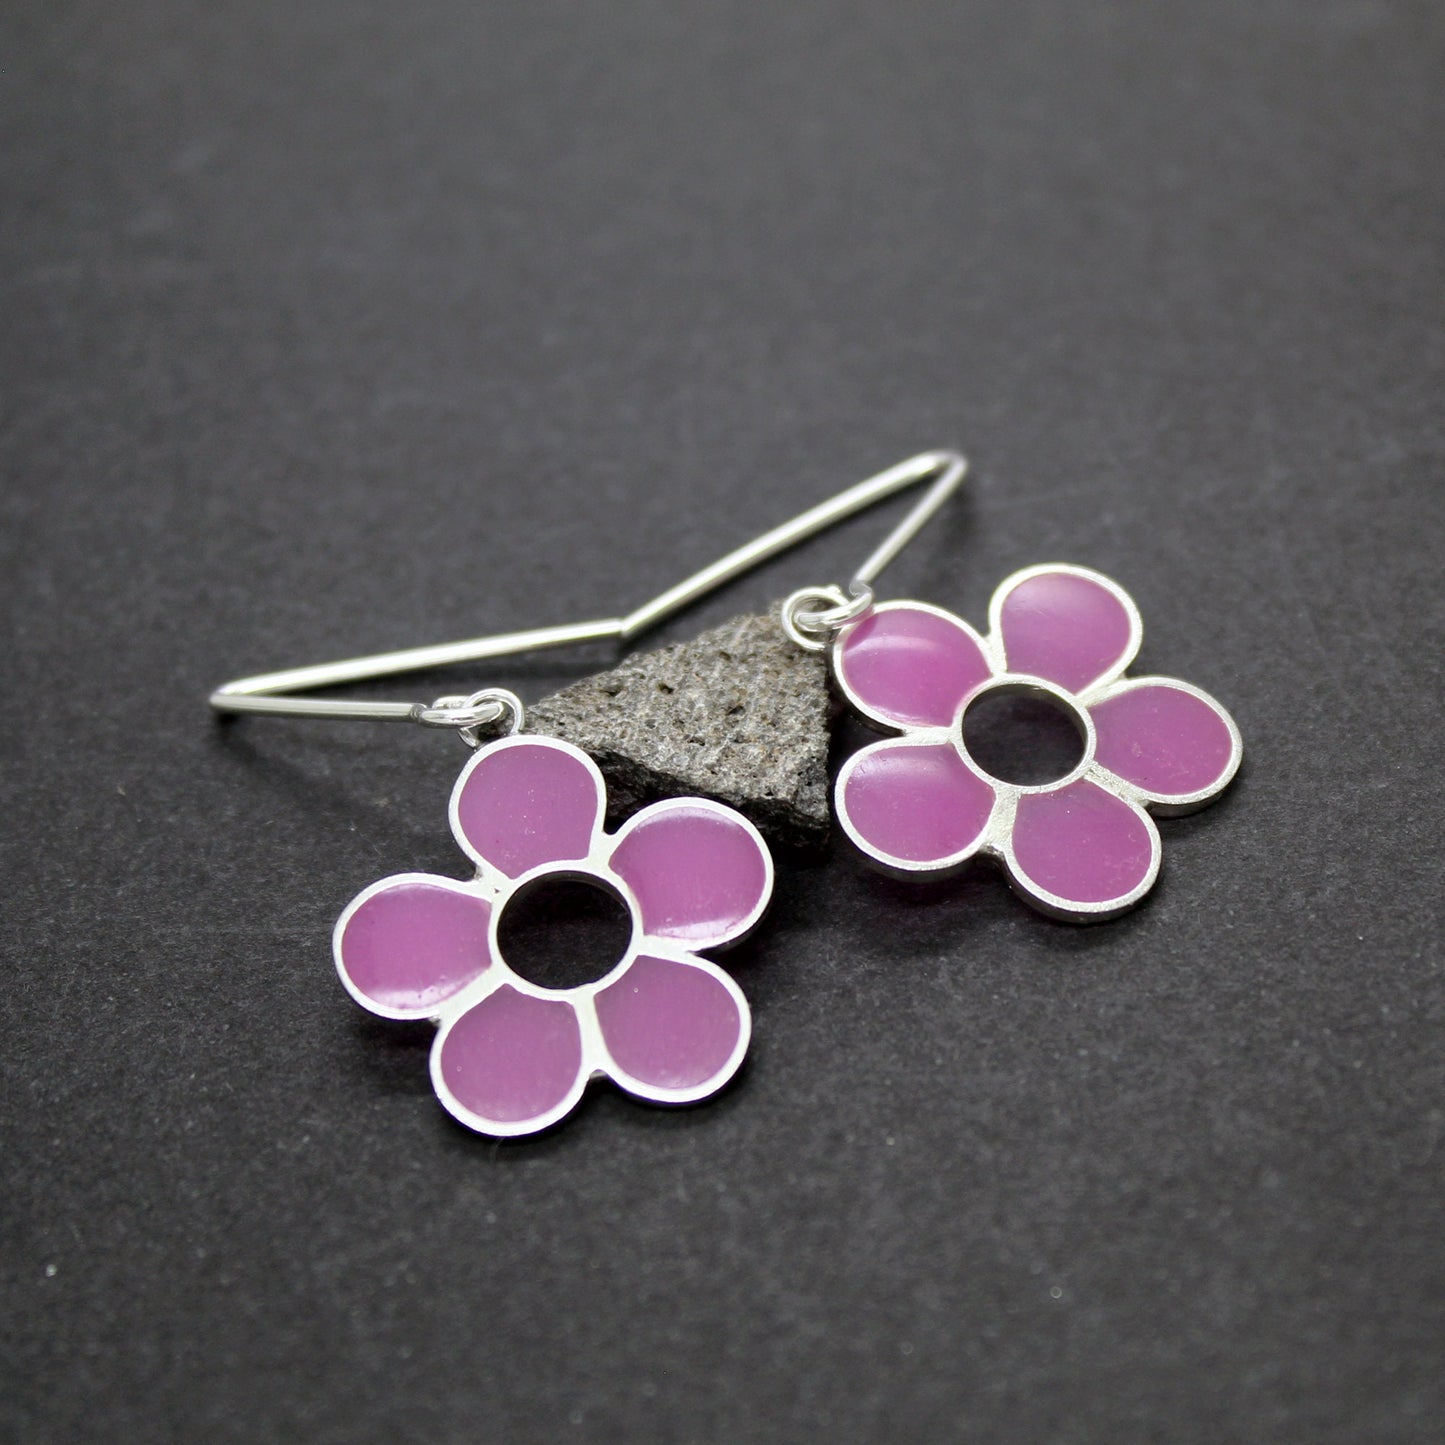 Lilac flowers earrings in 925 silver